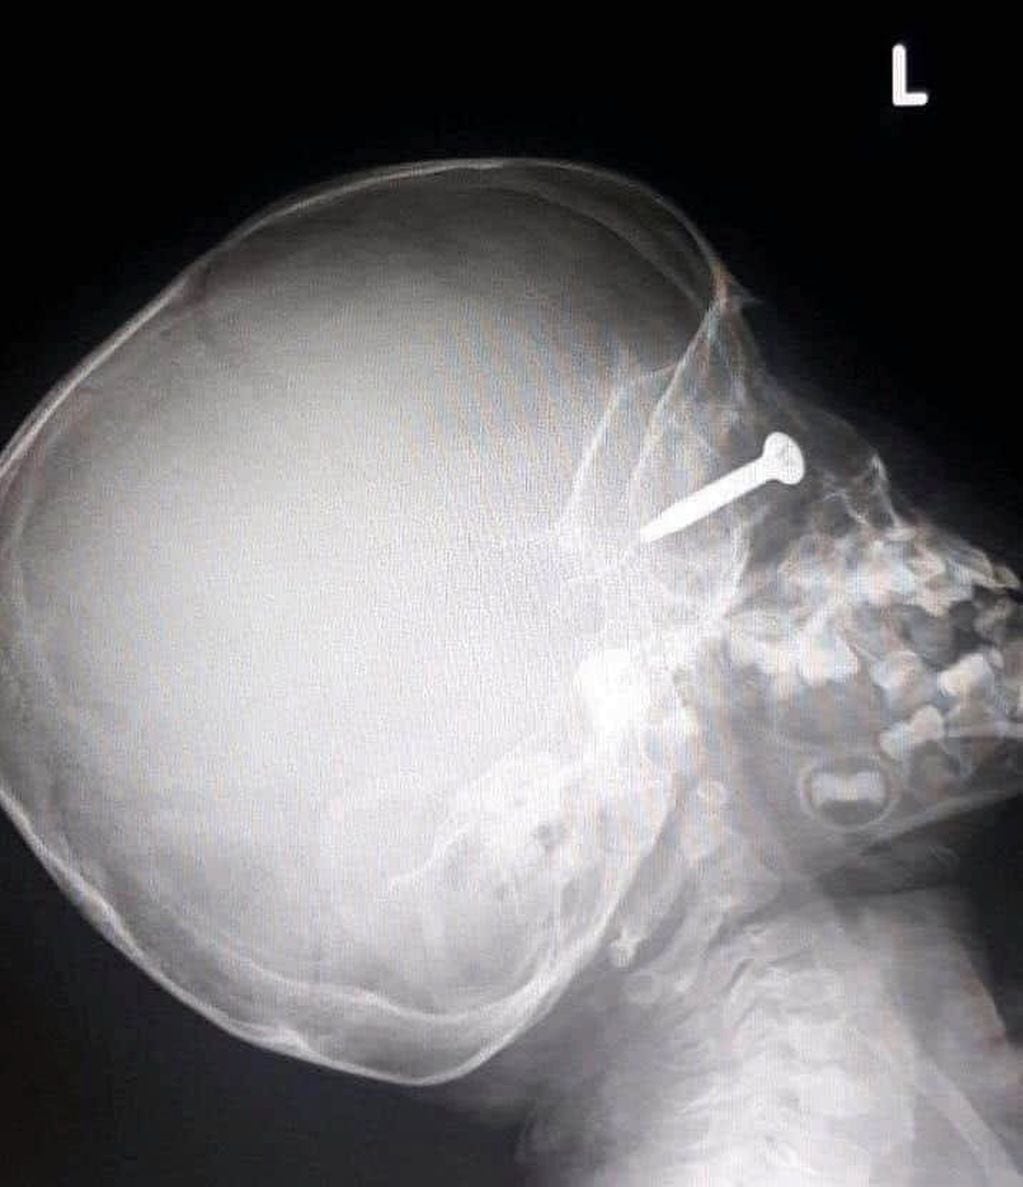 Un nene de 3 años sufrió una terrible lesión ocular cuando su papá cortaba el pasto y un tornillo se engancó en la máquina, voló y se clavó en su ojo.